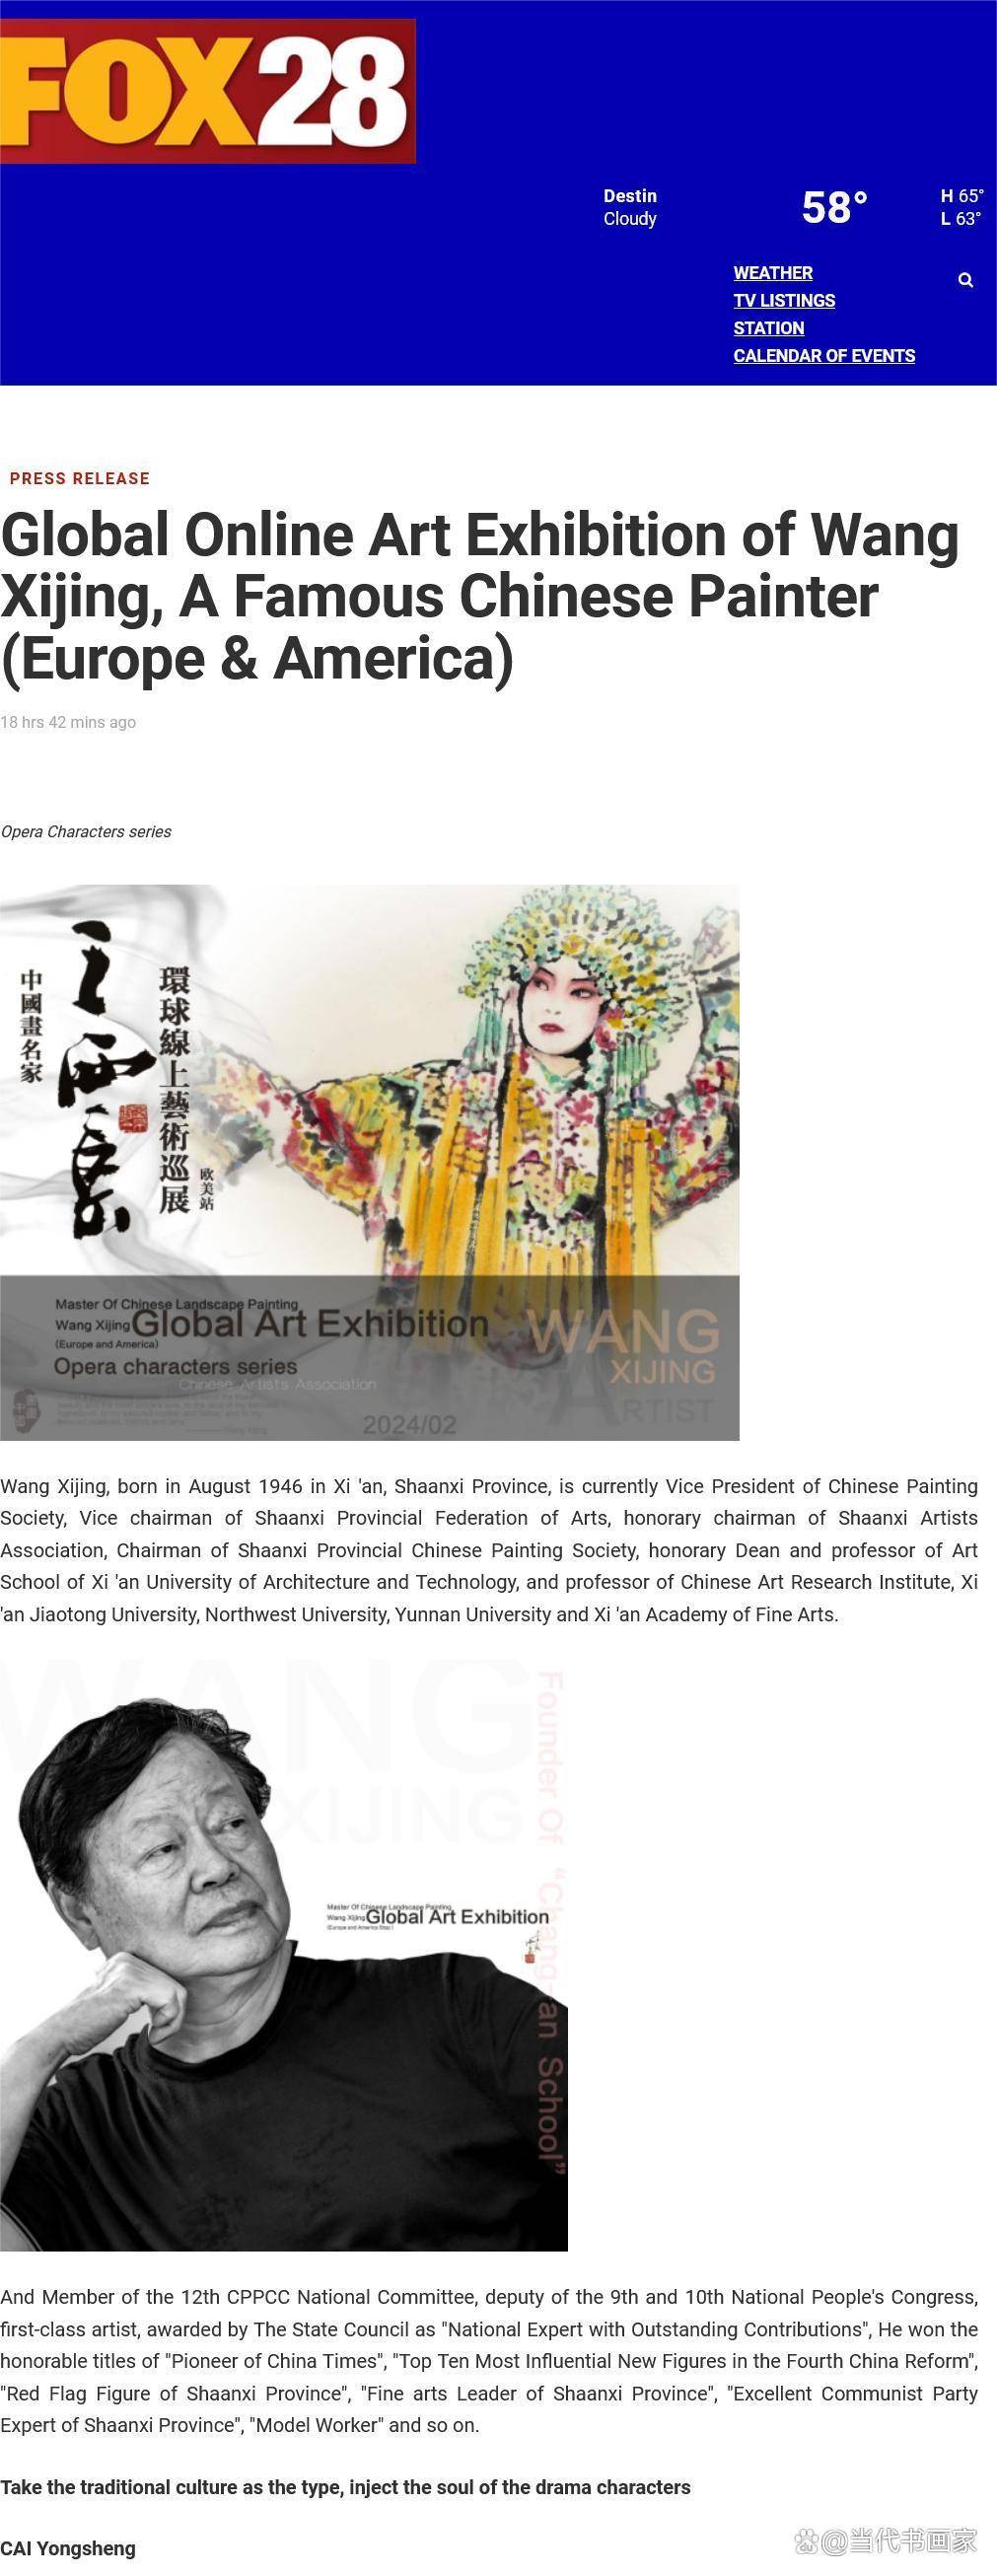 中国画名家王西京梨苑系列环球线上艺术巡展欧美站